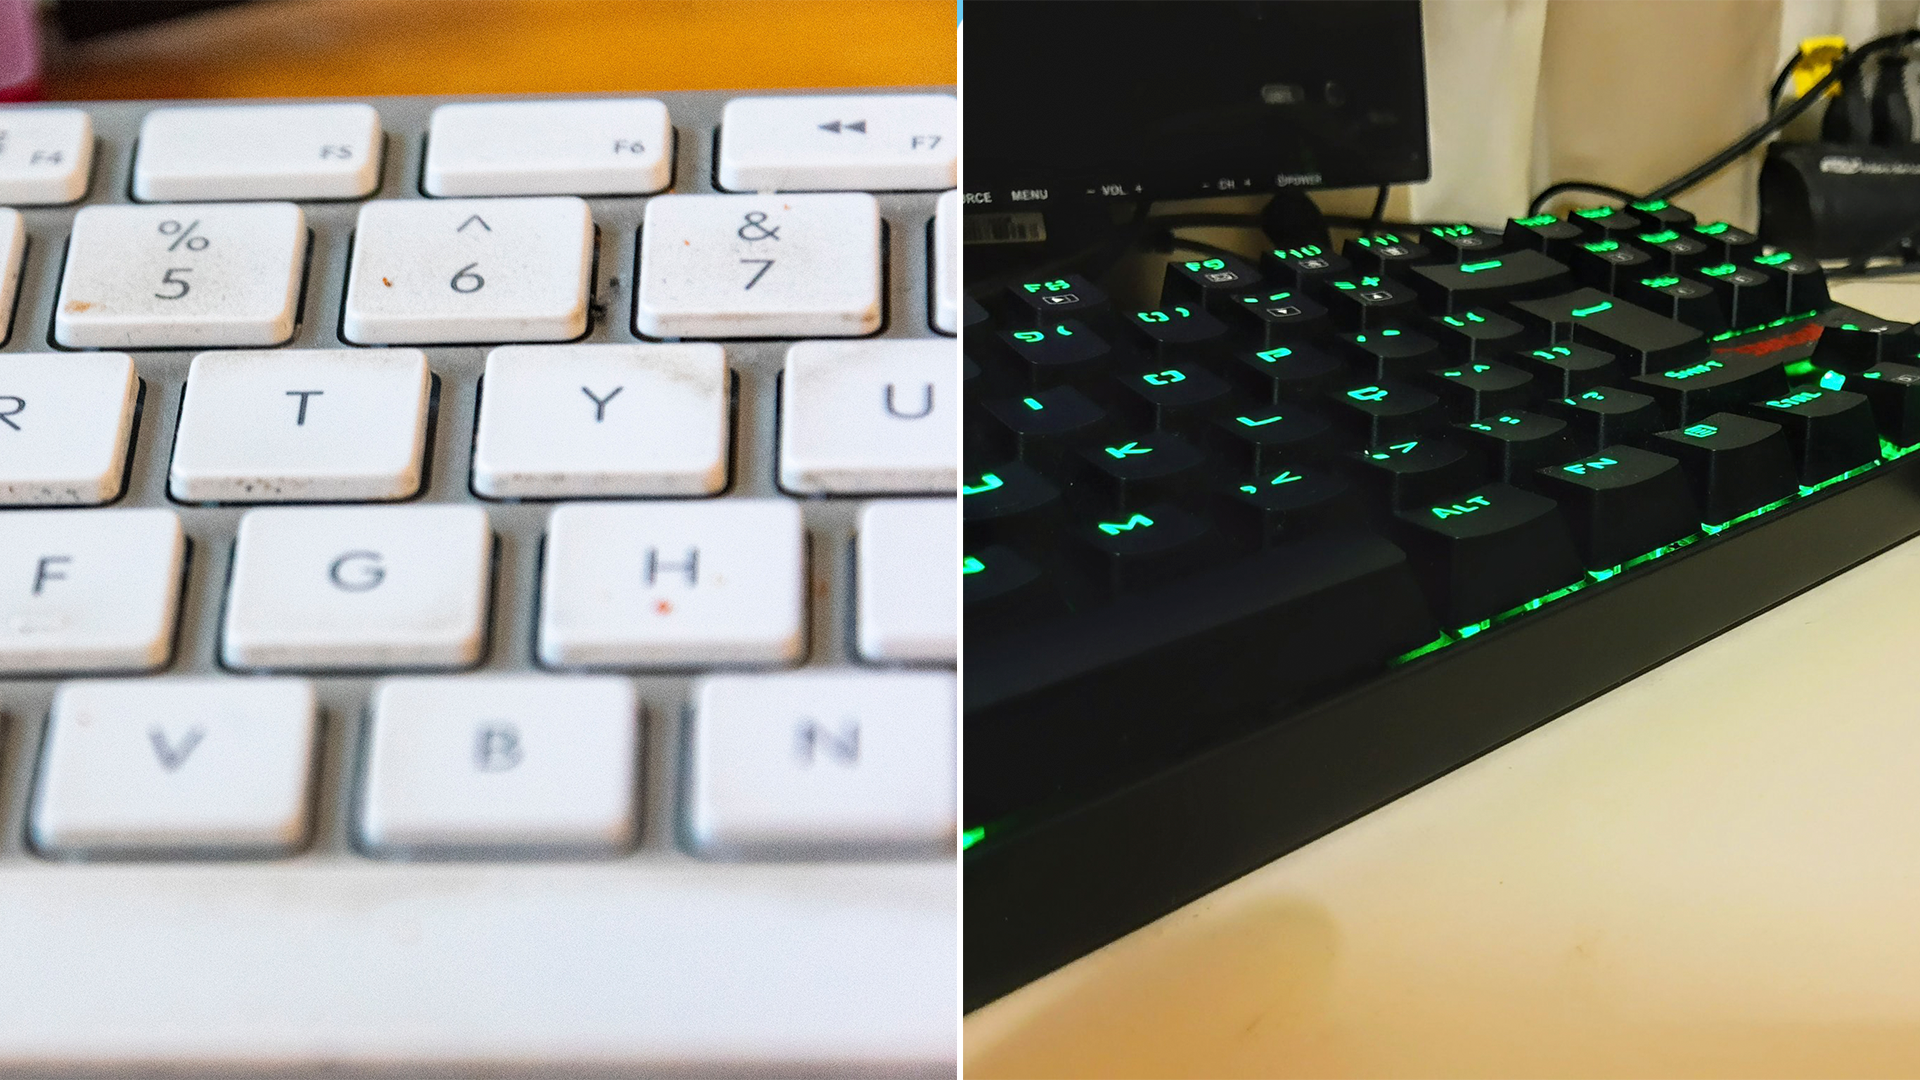 Los teclados suelen acumular dirt por el uso diario, pero existen varias solucións (Crédito: pixbay)